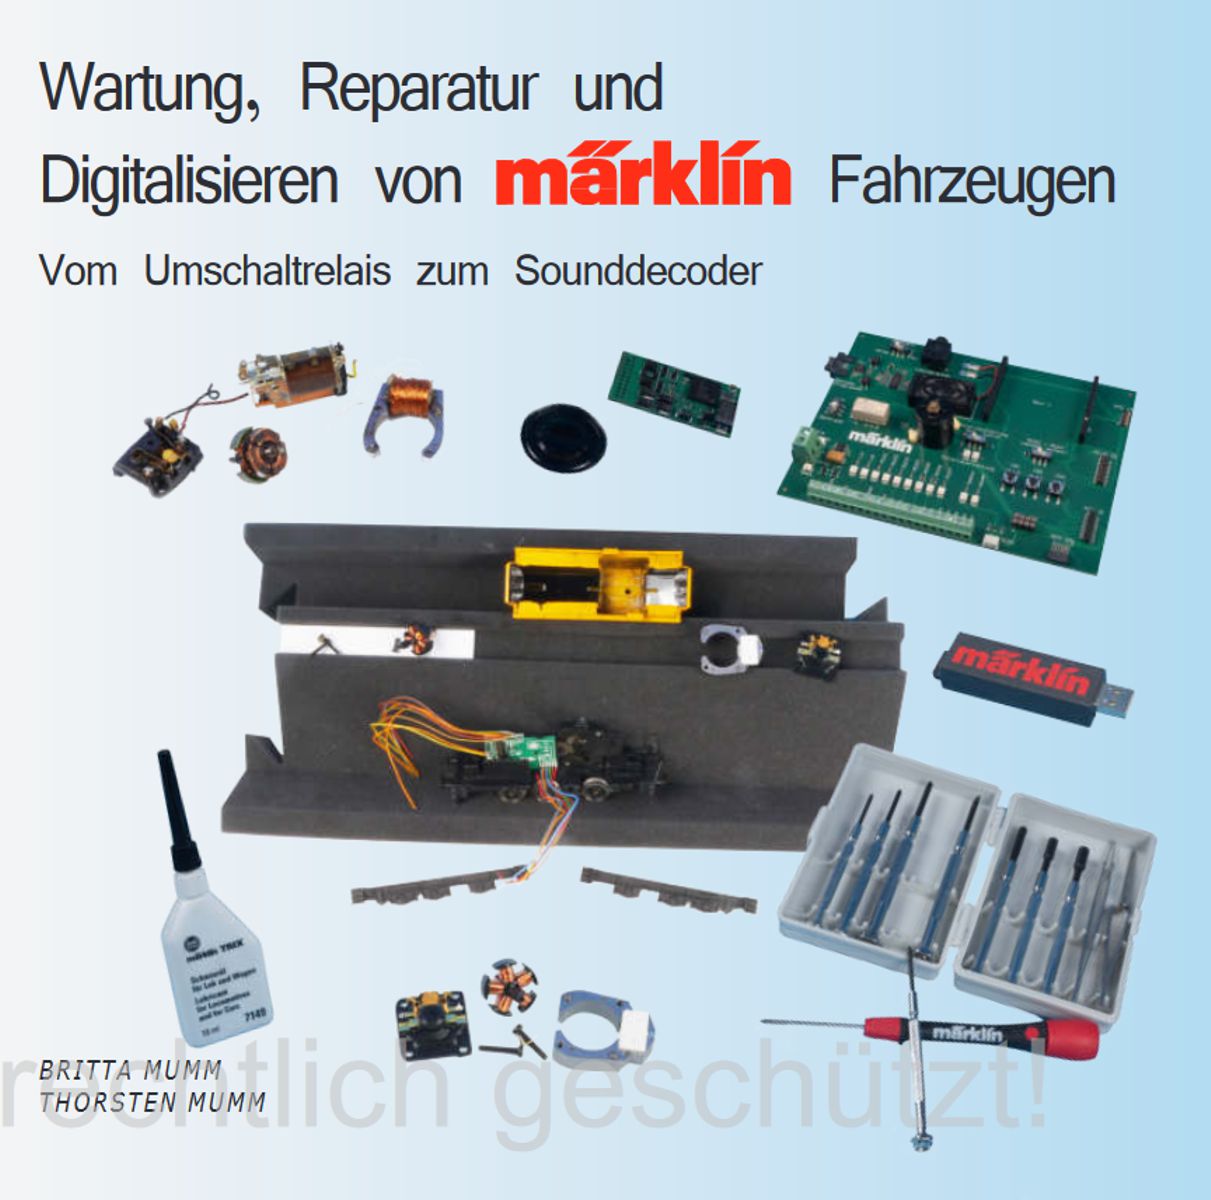 Märklin 220002 - Wartung, Reparatur und Digitalisieren von Märklin-Fahrzeugen